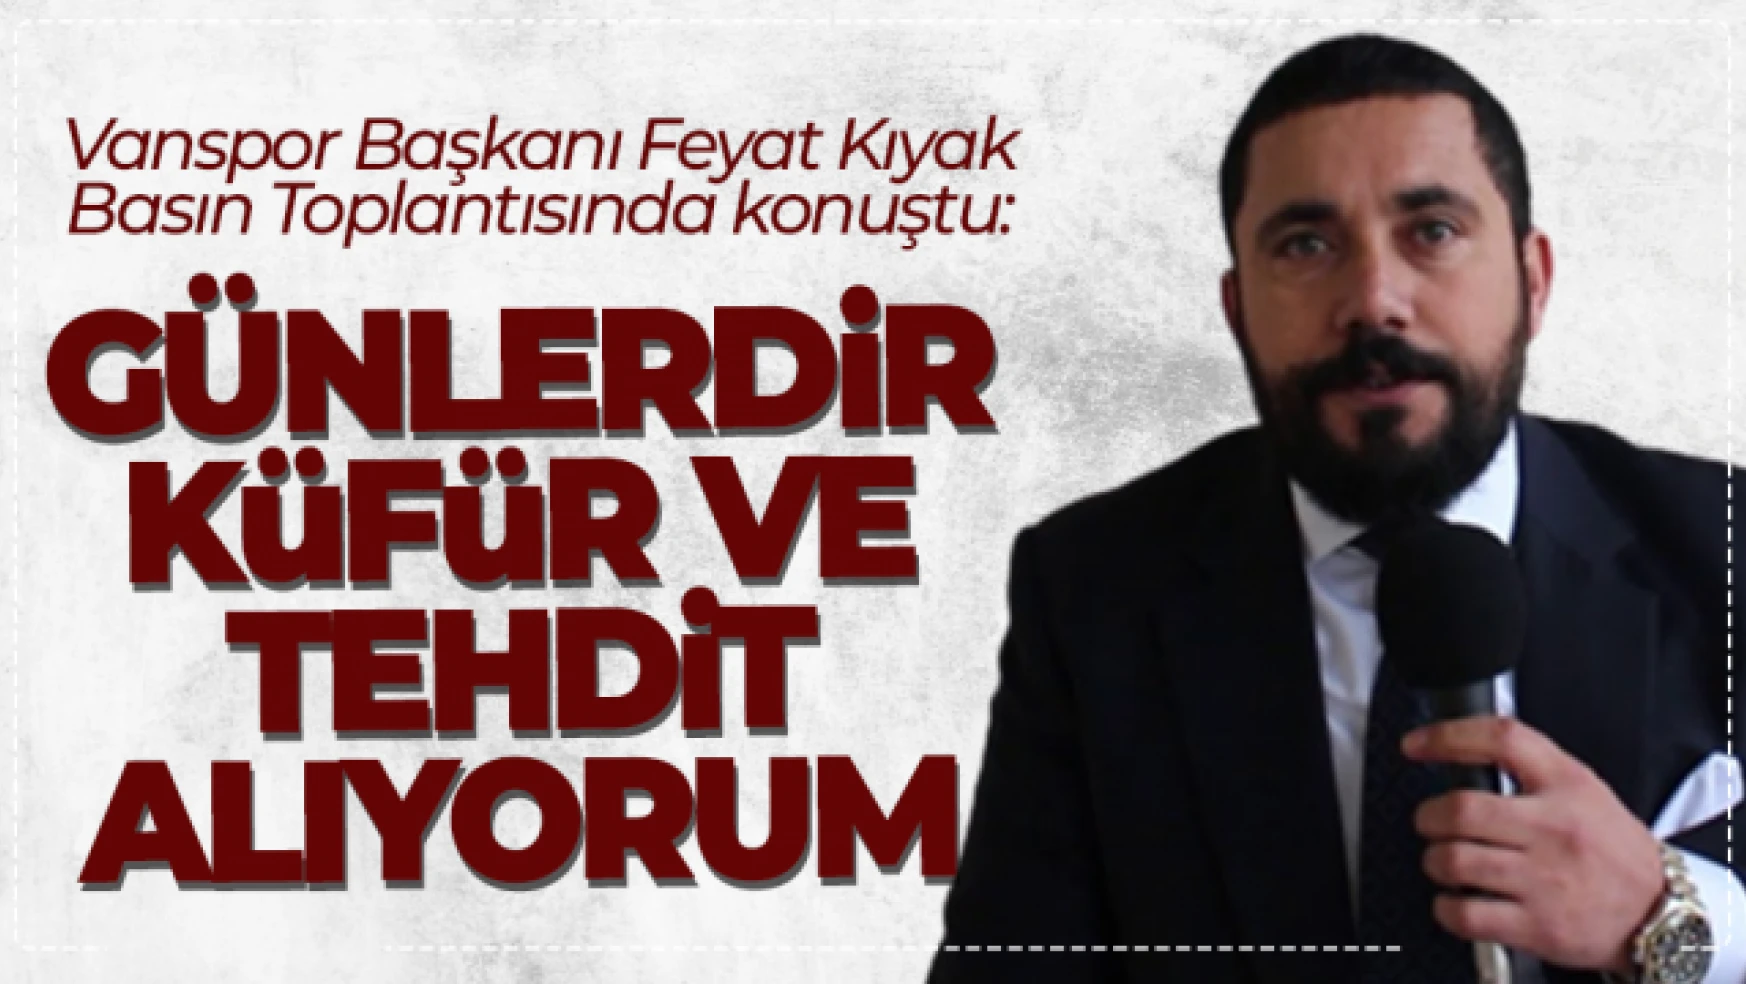 Vanspor Başkanı Feyat Kıyak gazetecilerin sorularını yanıtladı